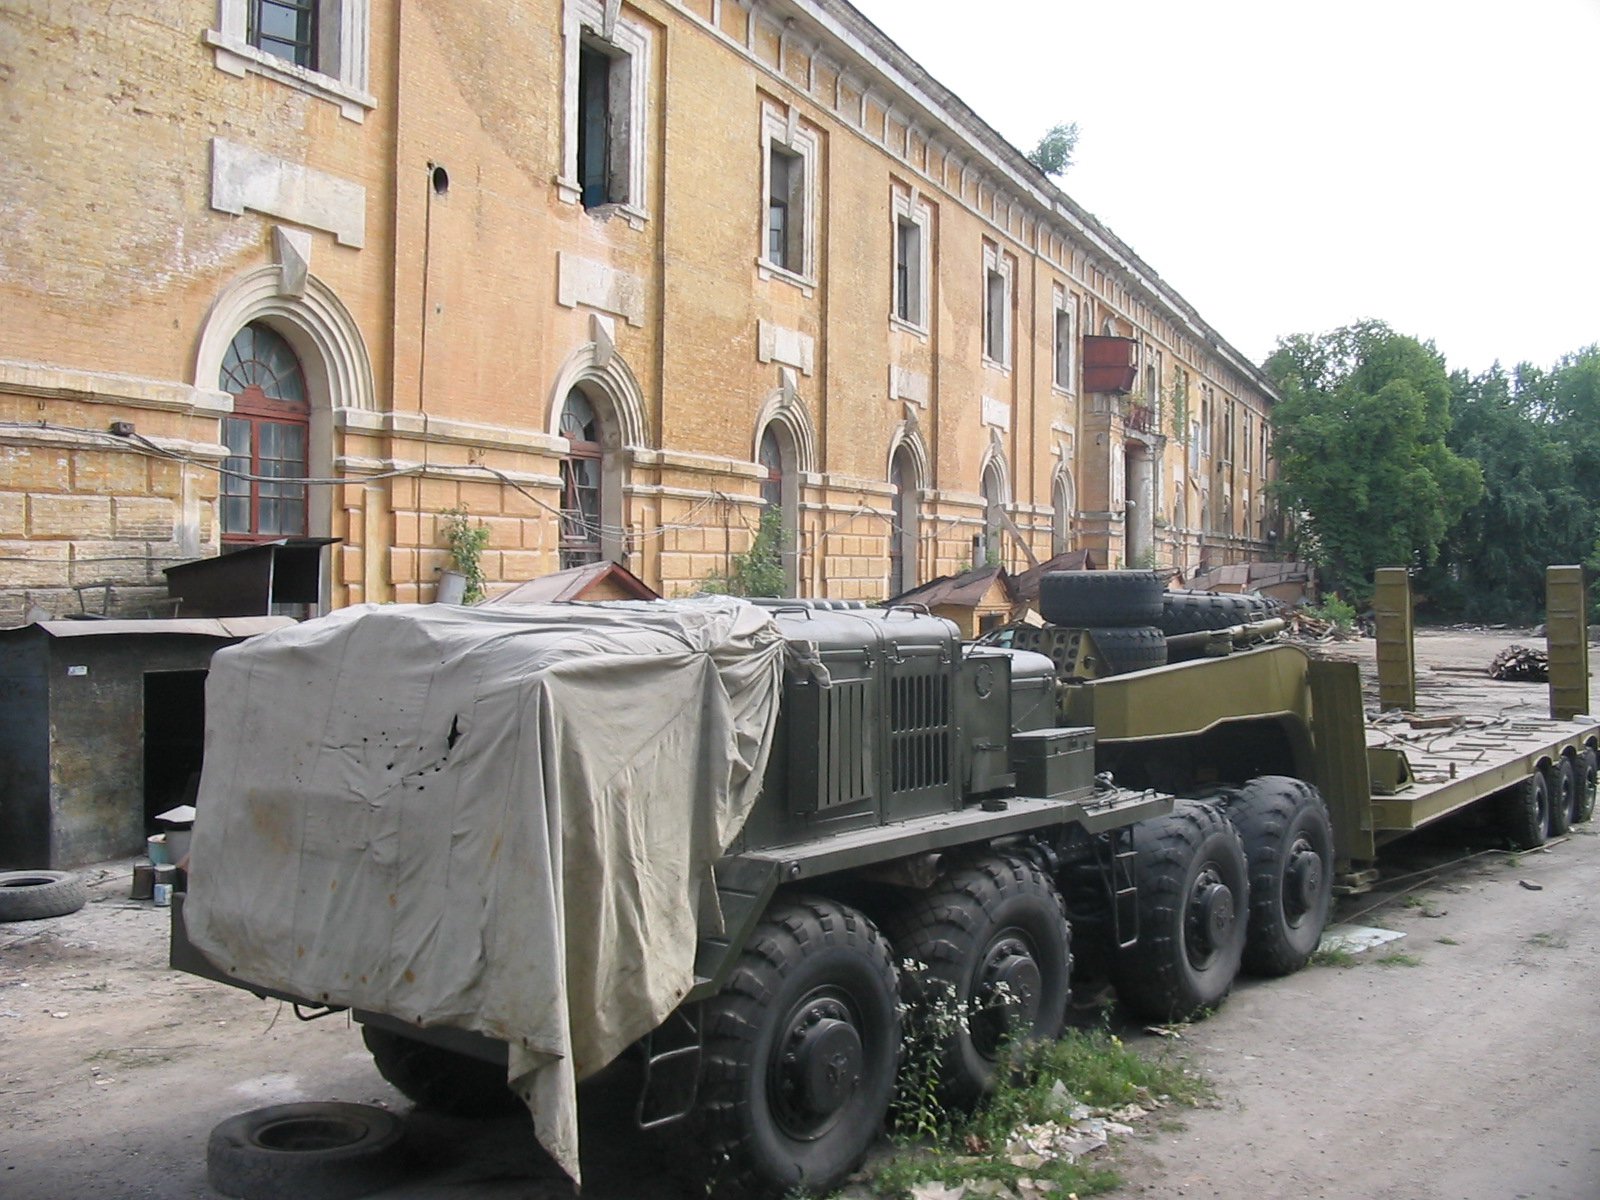 Так виглядав задній двір сьогоднішнього Мистецького арсеналу у 2005 році, під час демонтажу військового обладнання